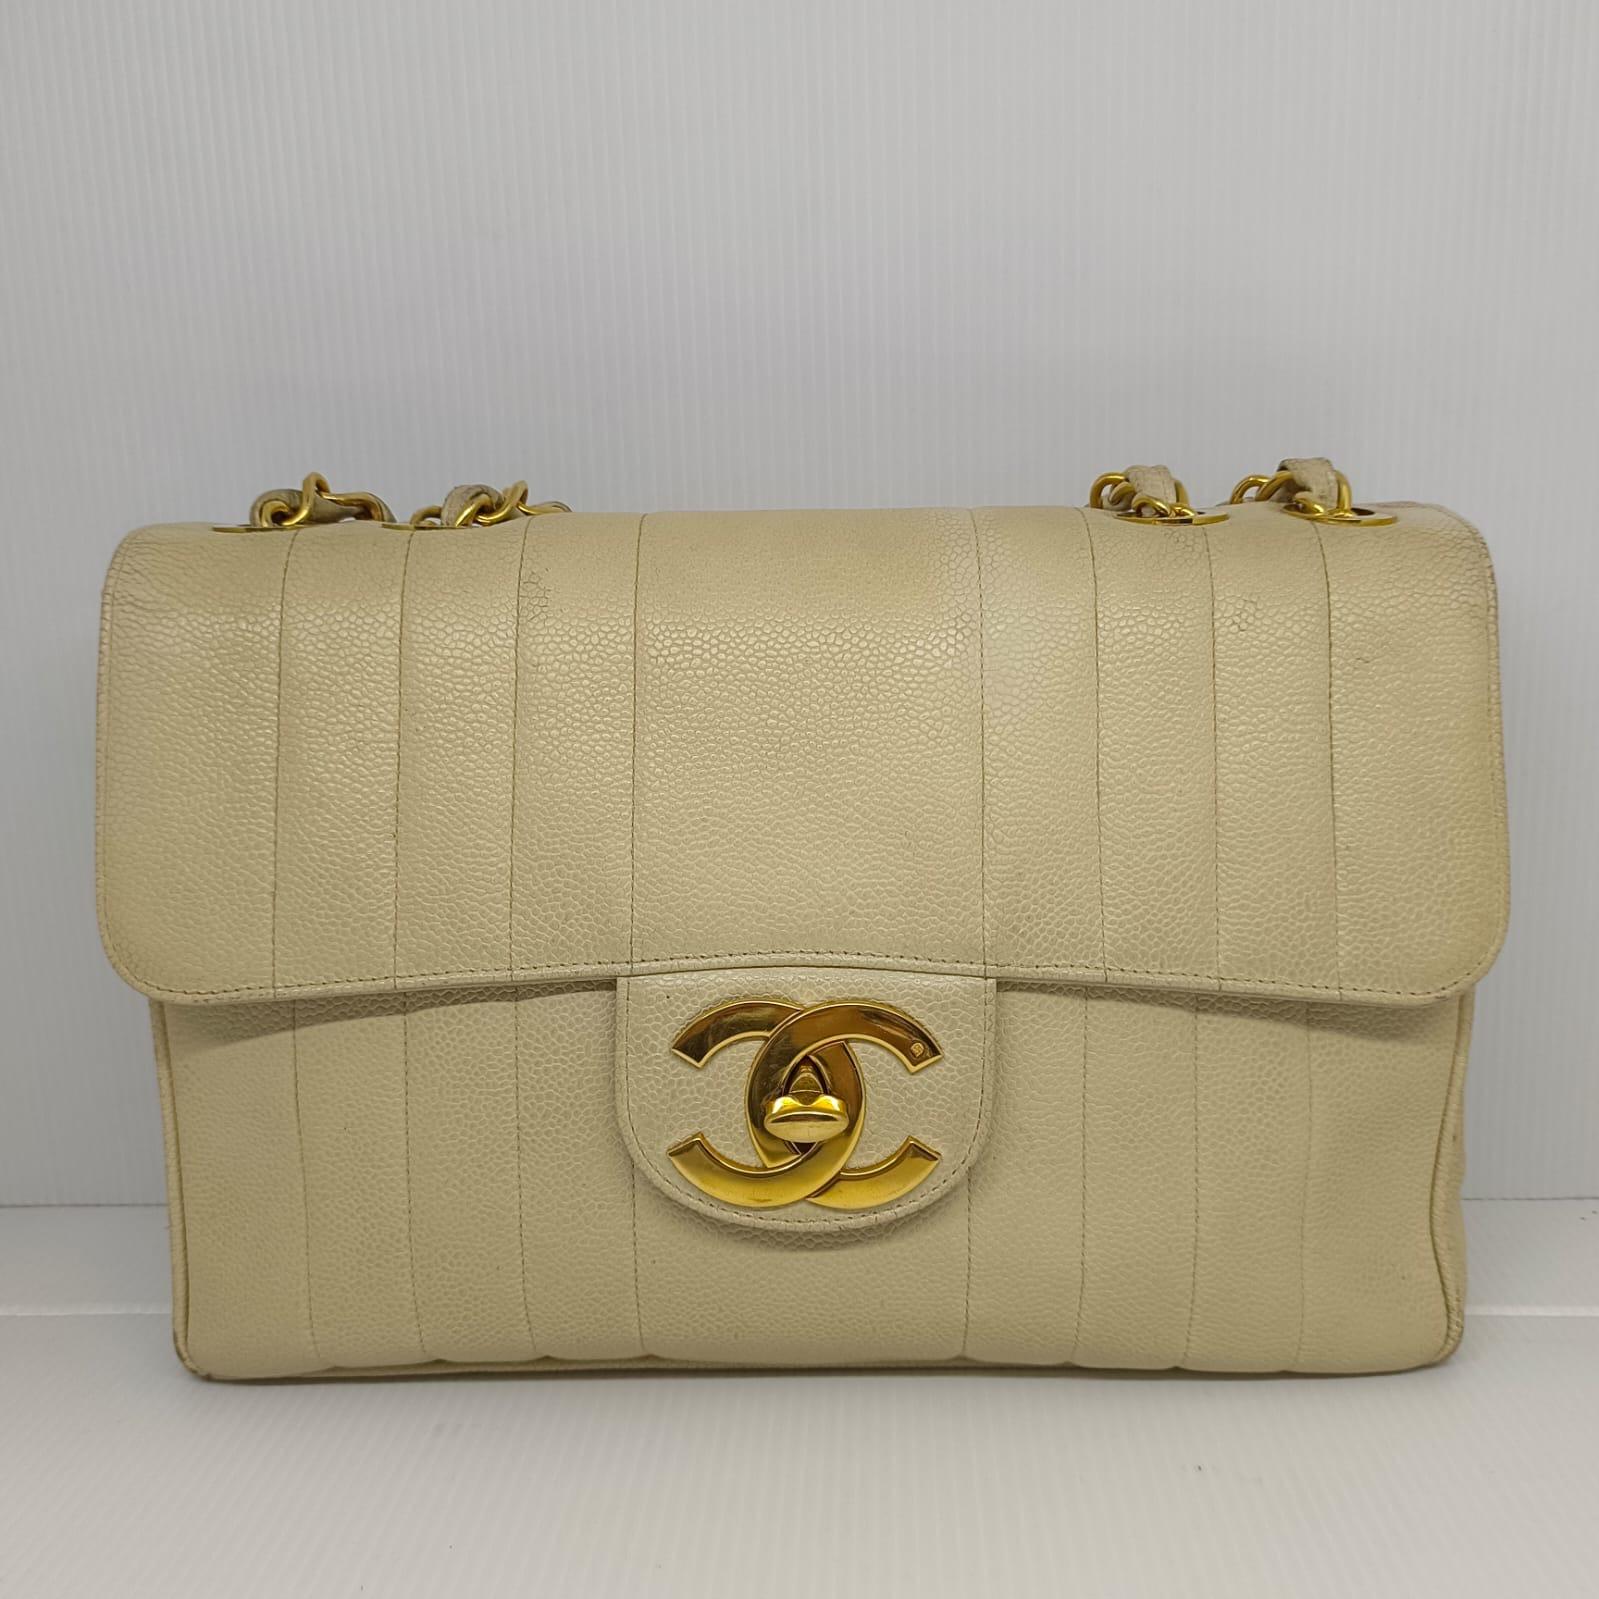 Seltene Chanel Vintage Jumbo vertikale gesteppte Tasche in off weiß Kaviar Leder mit 24k Gold Hardware. In getragenem Zustand, mit leichten Schmutzspuren auf der Lederoberfläche. Die Ecken weisen sichtbare Reibungsspuren auf und das Lederfutter ist